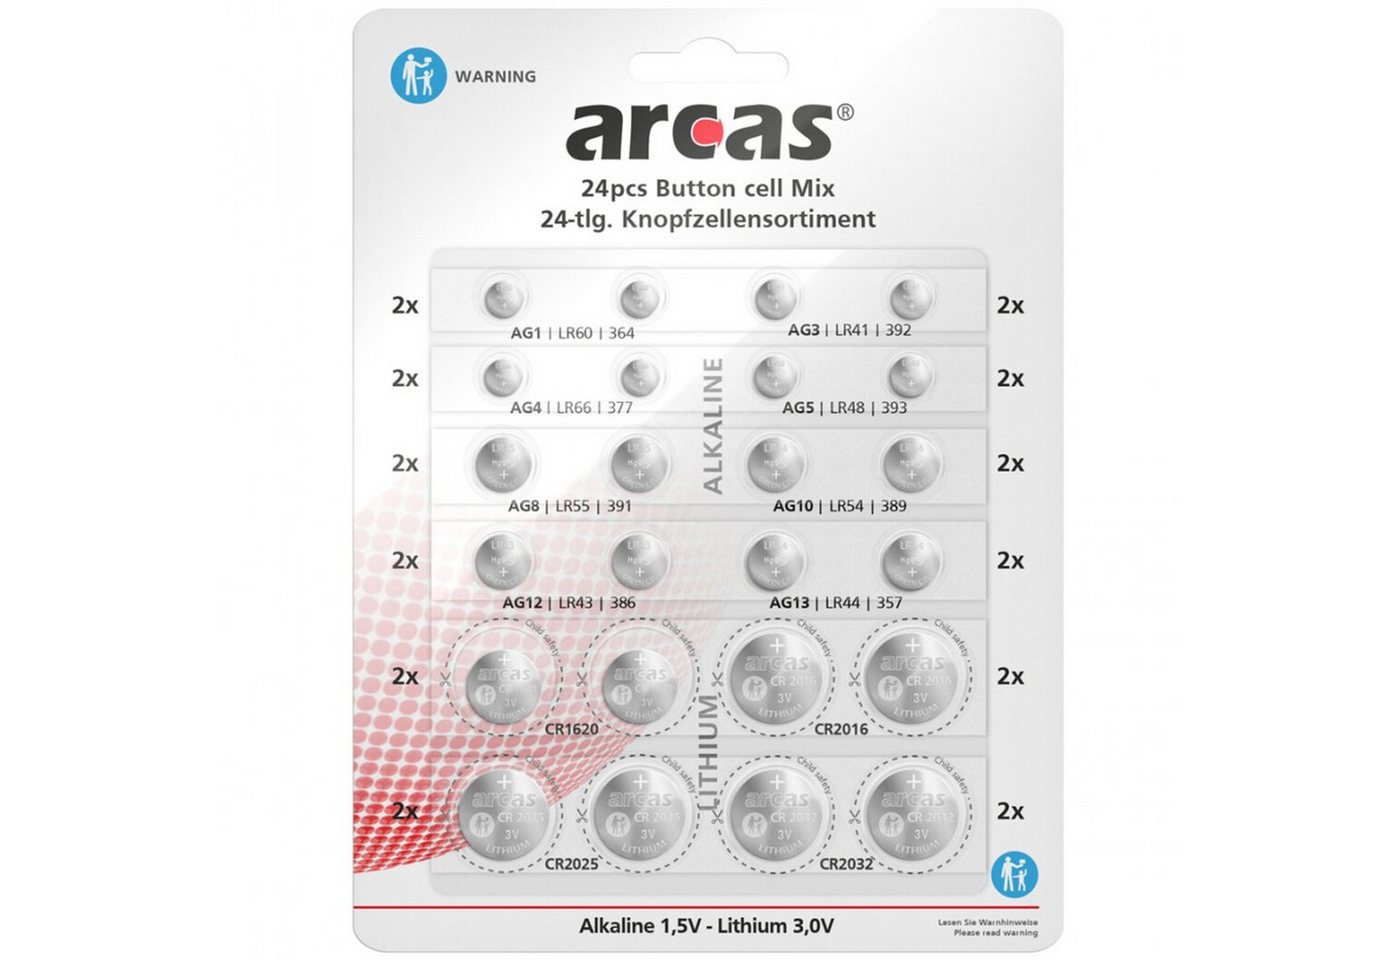 Arcas 24x Knopfzellen Set Sortiment Knopfbatterien Knopfzelle, (24 St), Knopfzellensortiment, Knopfzellenset von Arcas